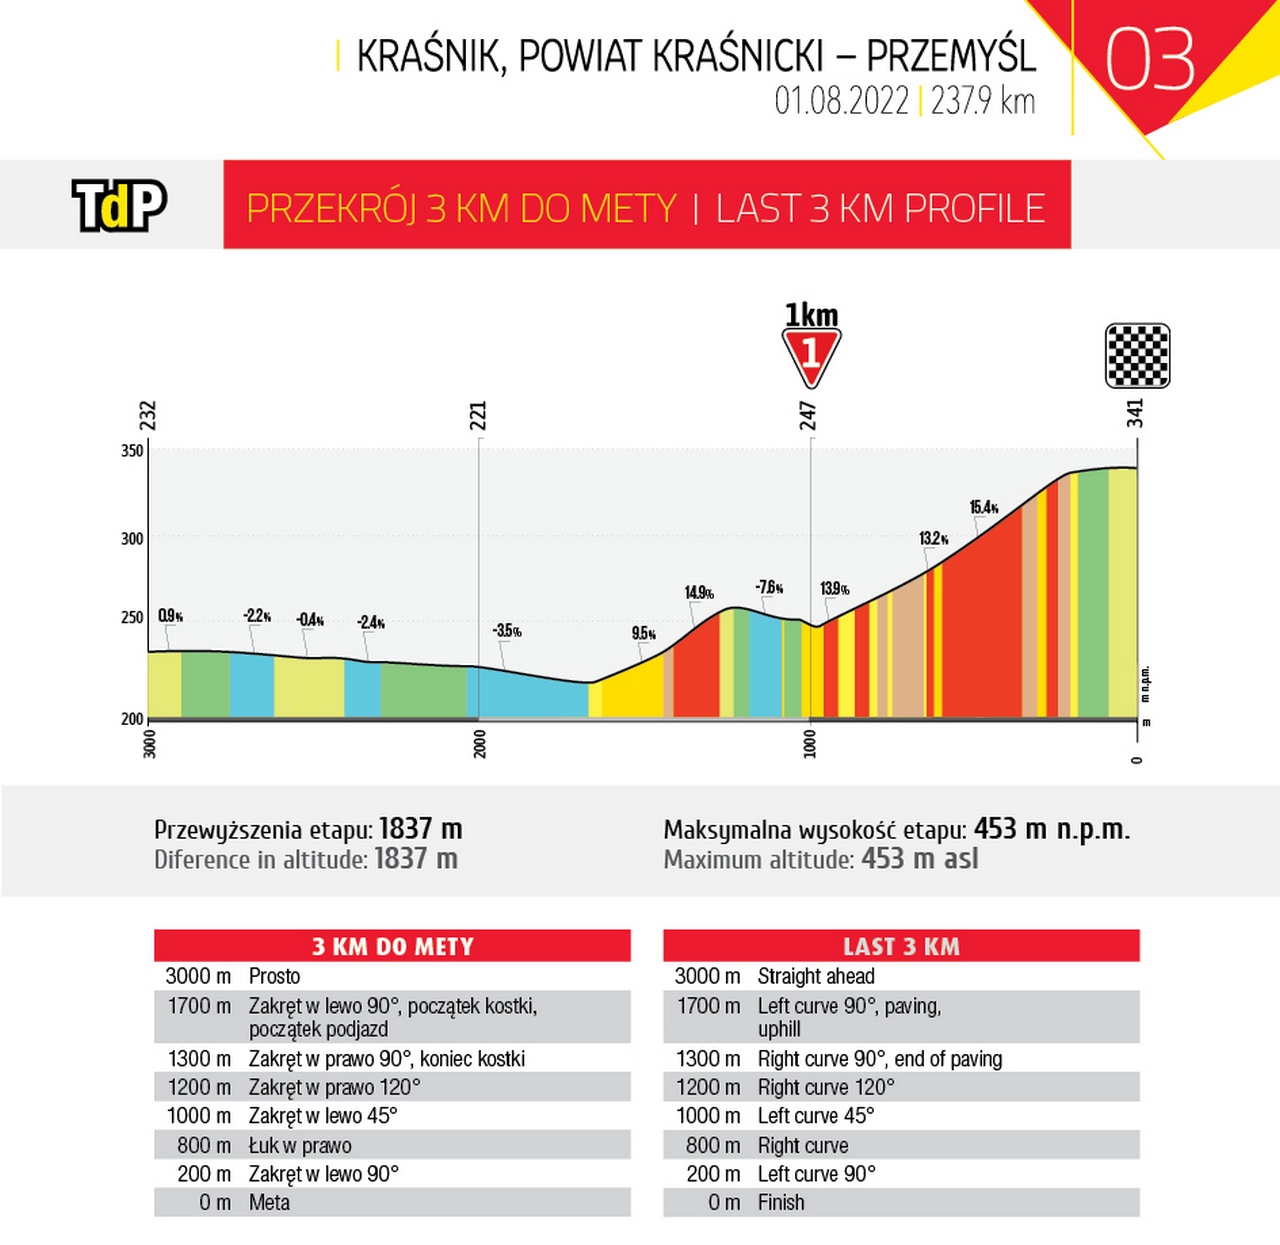 Tour de Pologne 2022 - vista previa y predicciones